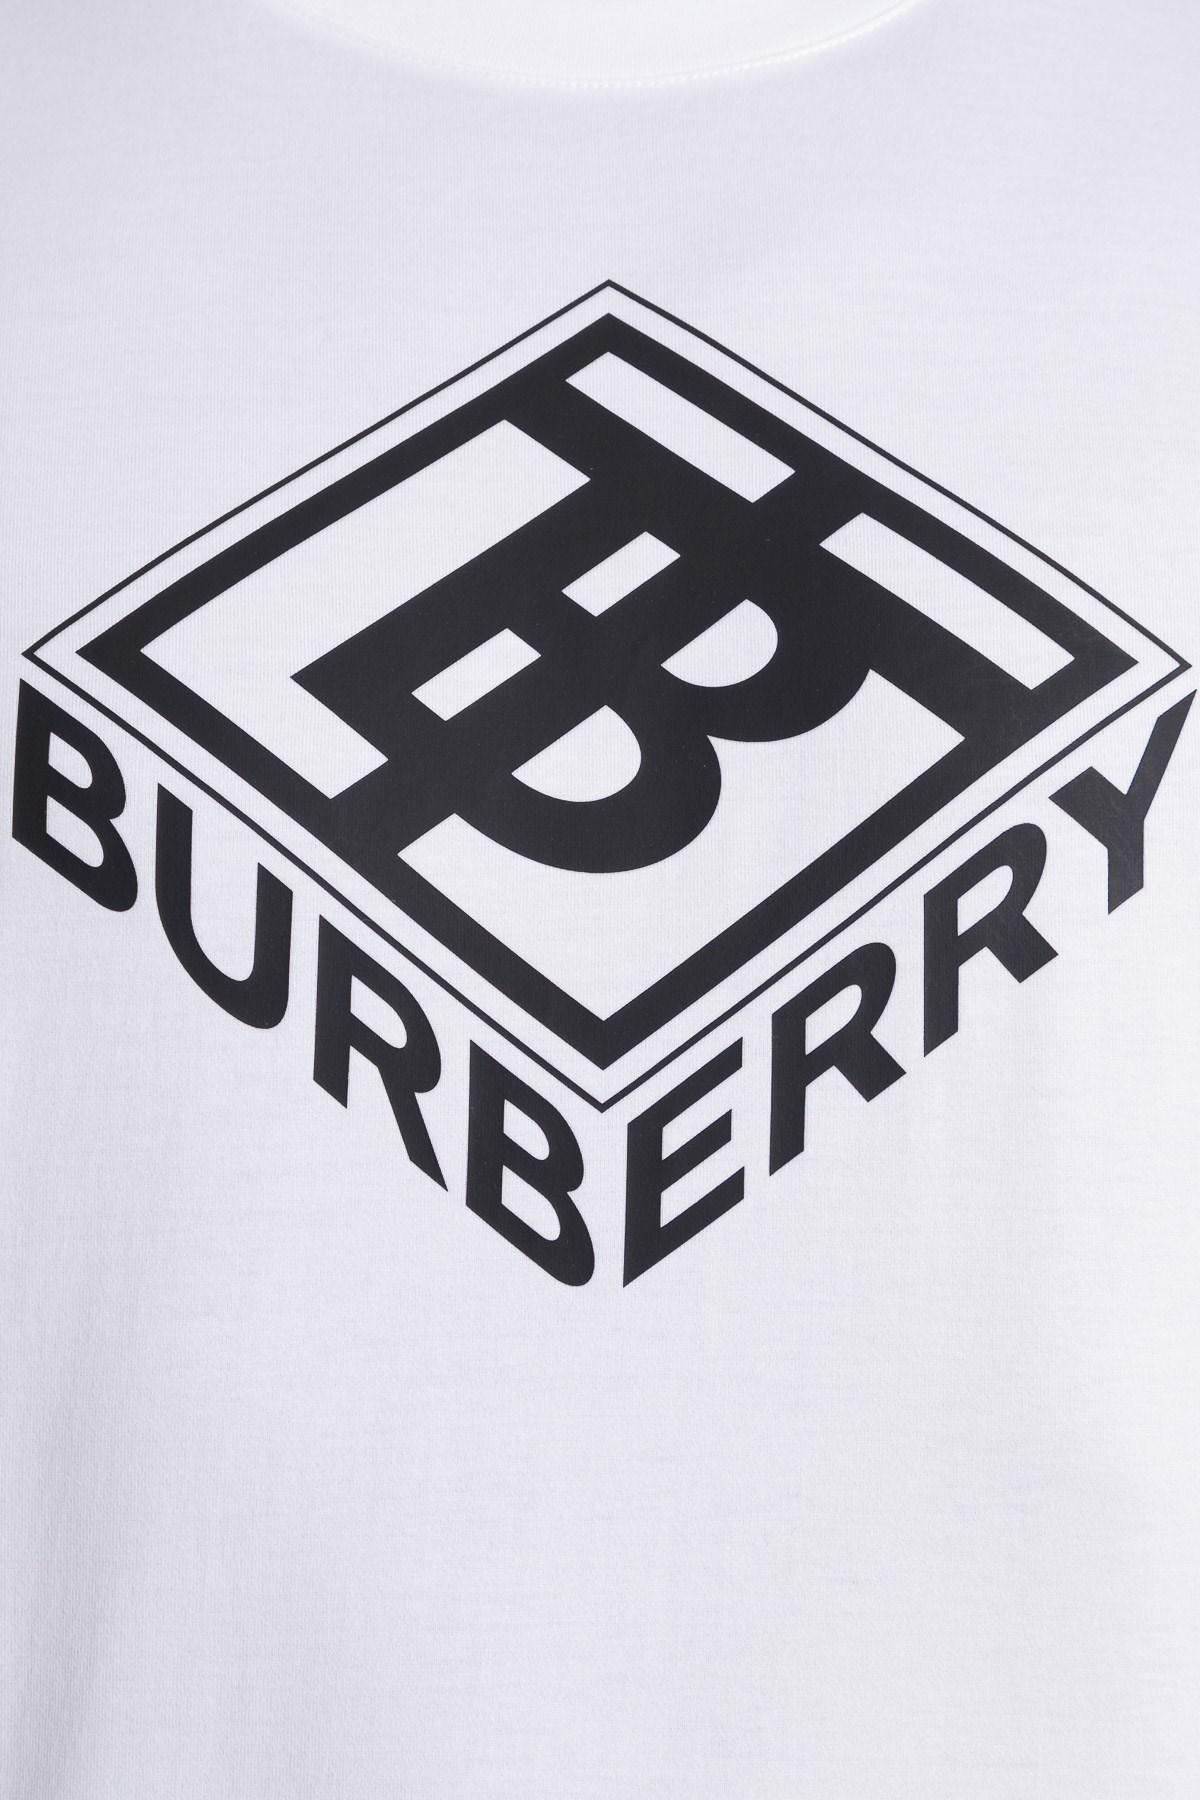 derinleştirmek kahvaltı ederim hakikat logo tb burberry yine Süslü elbise  Ara sıra